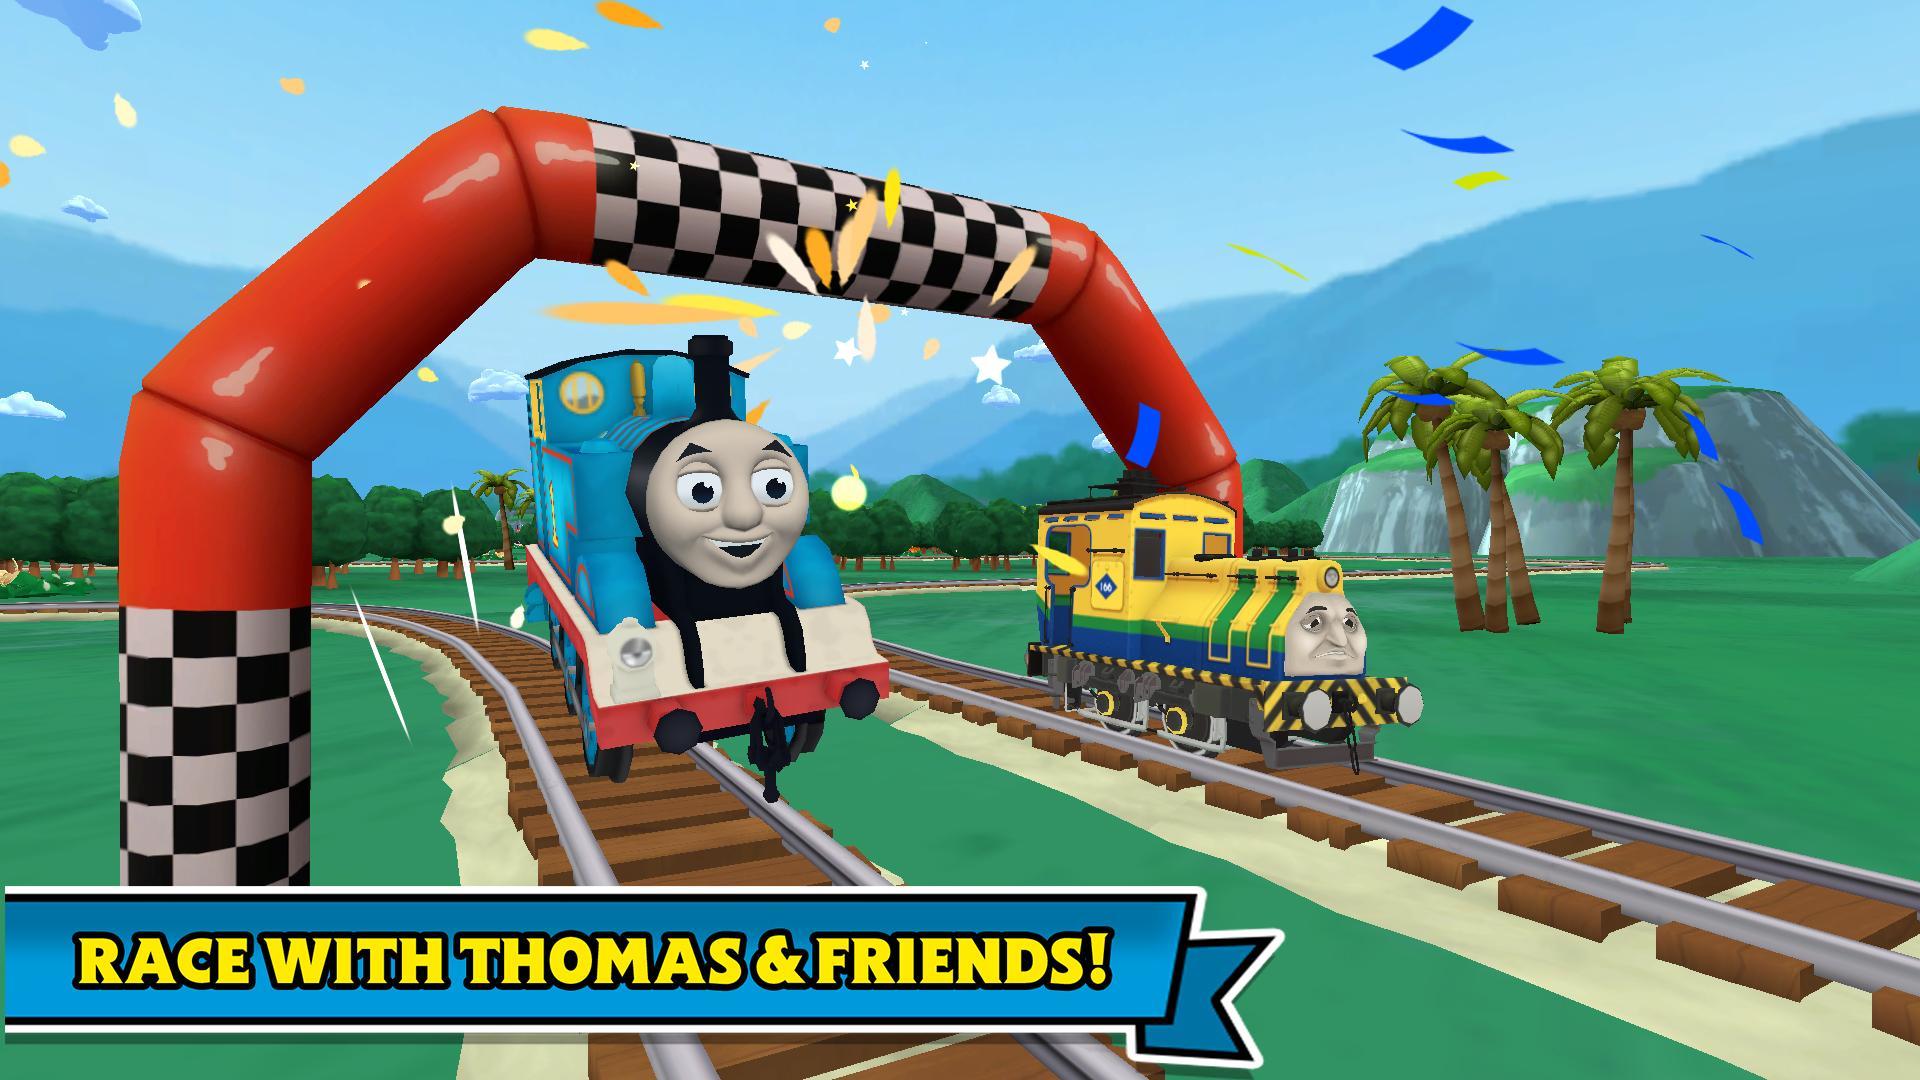 Screenshot 1 of Thomas & Những người bạn: Những cuộc phiêu lưu! 